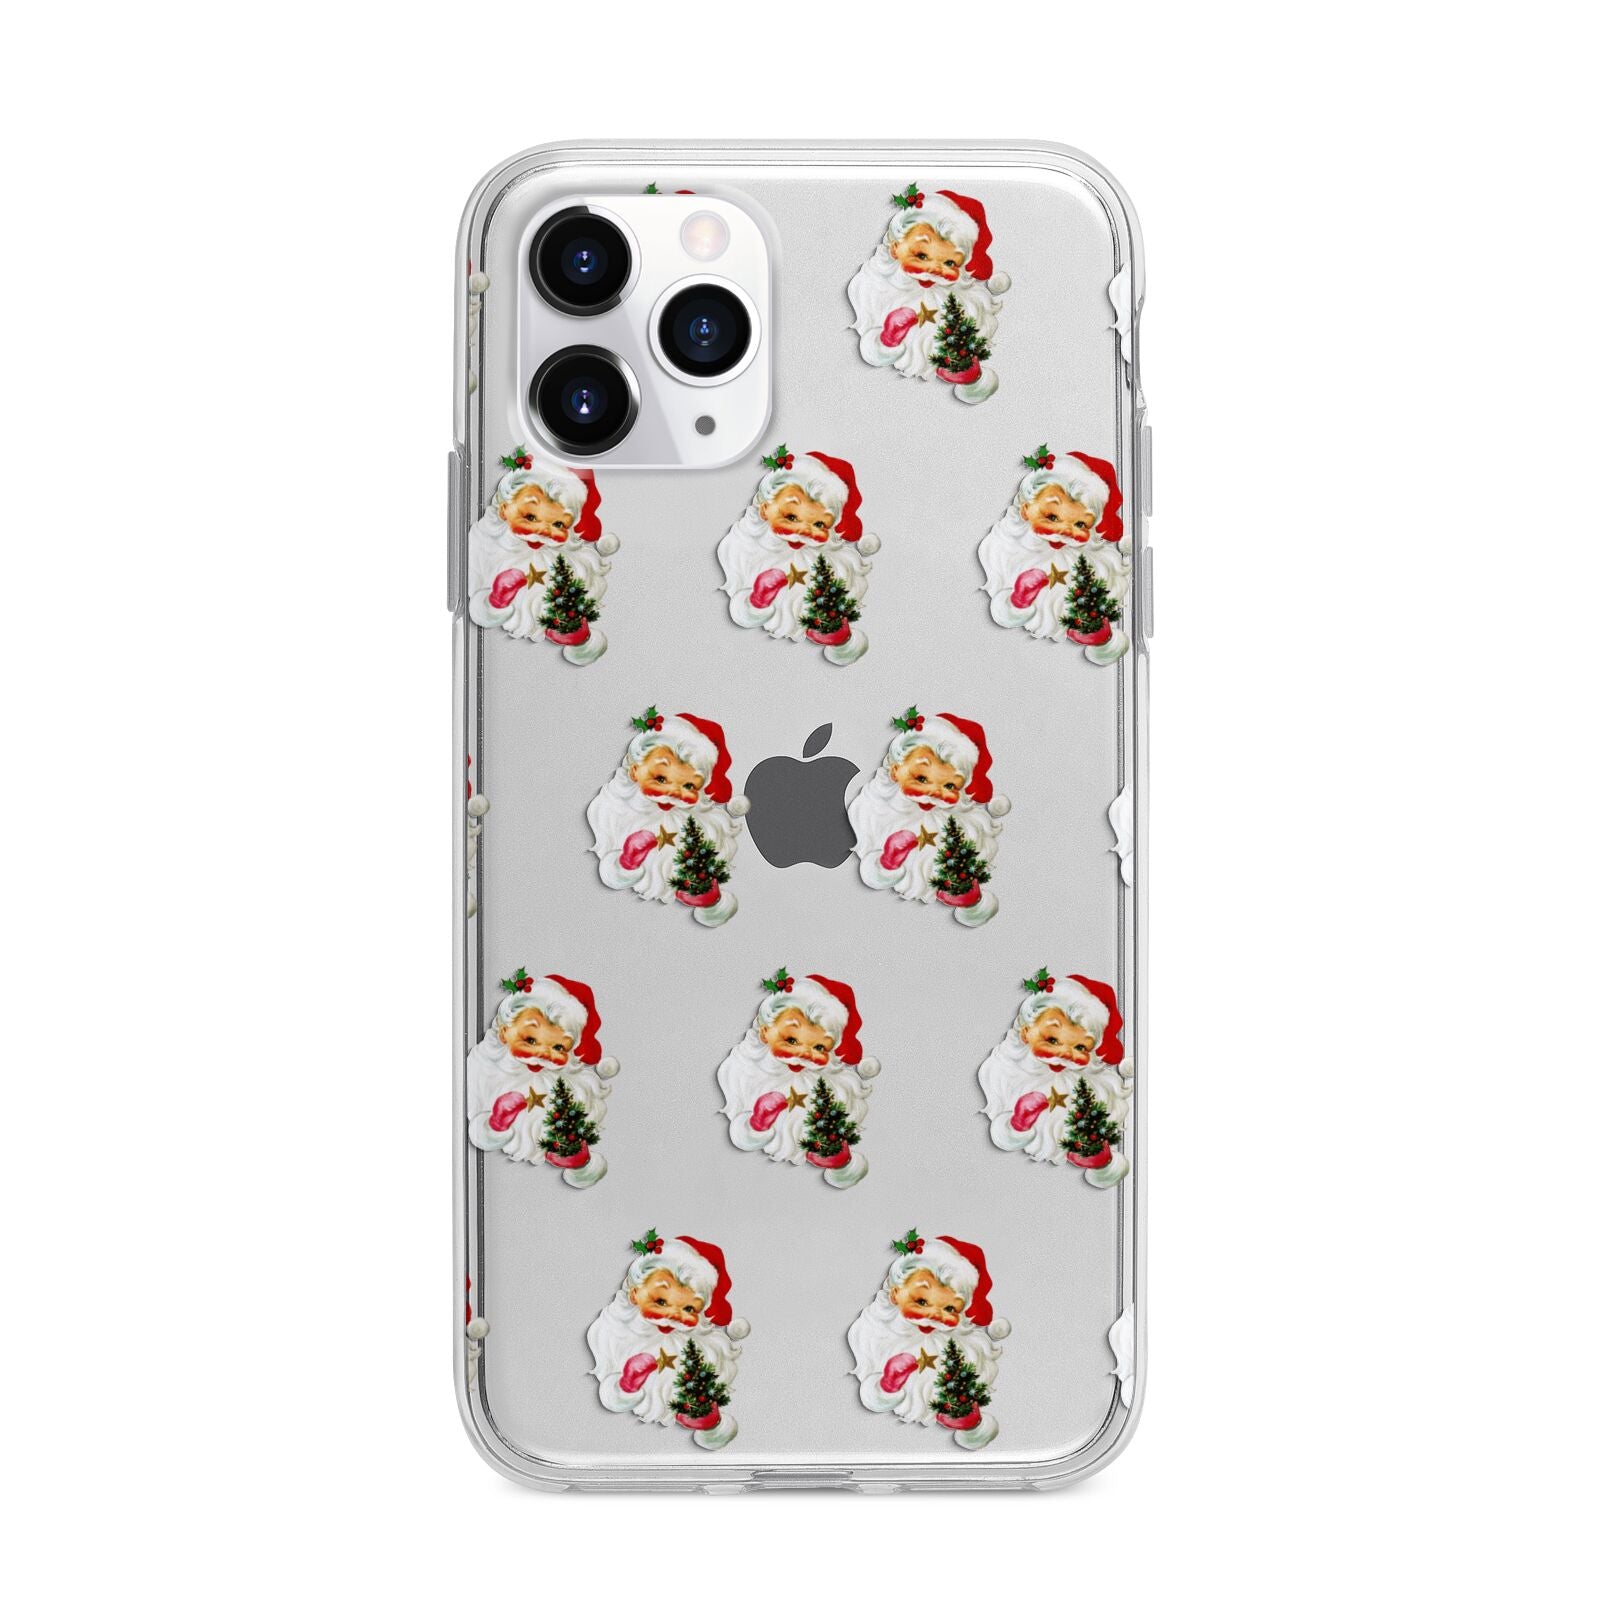 Retro Santa Face Apple iPhone 11 Pro in Silver with Bumper Case